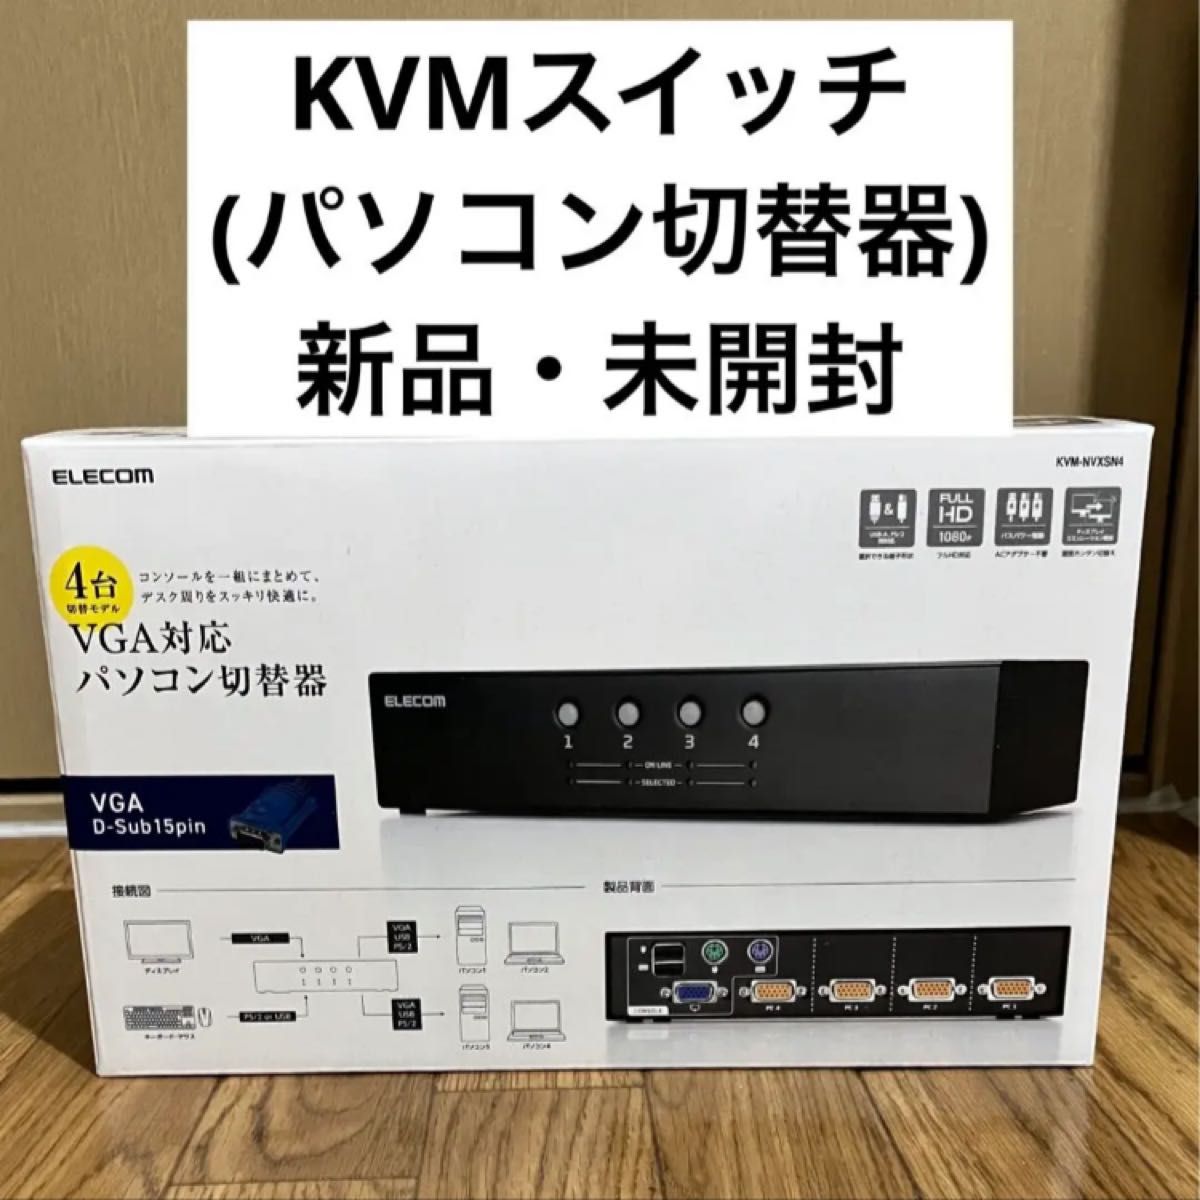 KVMスイッチ KVM-NVXSN4 パソコン 切替 周辺機器 PC ガジェット ELECOM  ディスプレイ モニター 便利